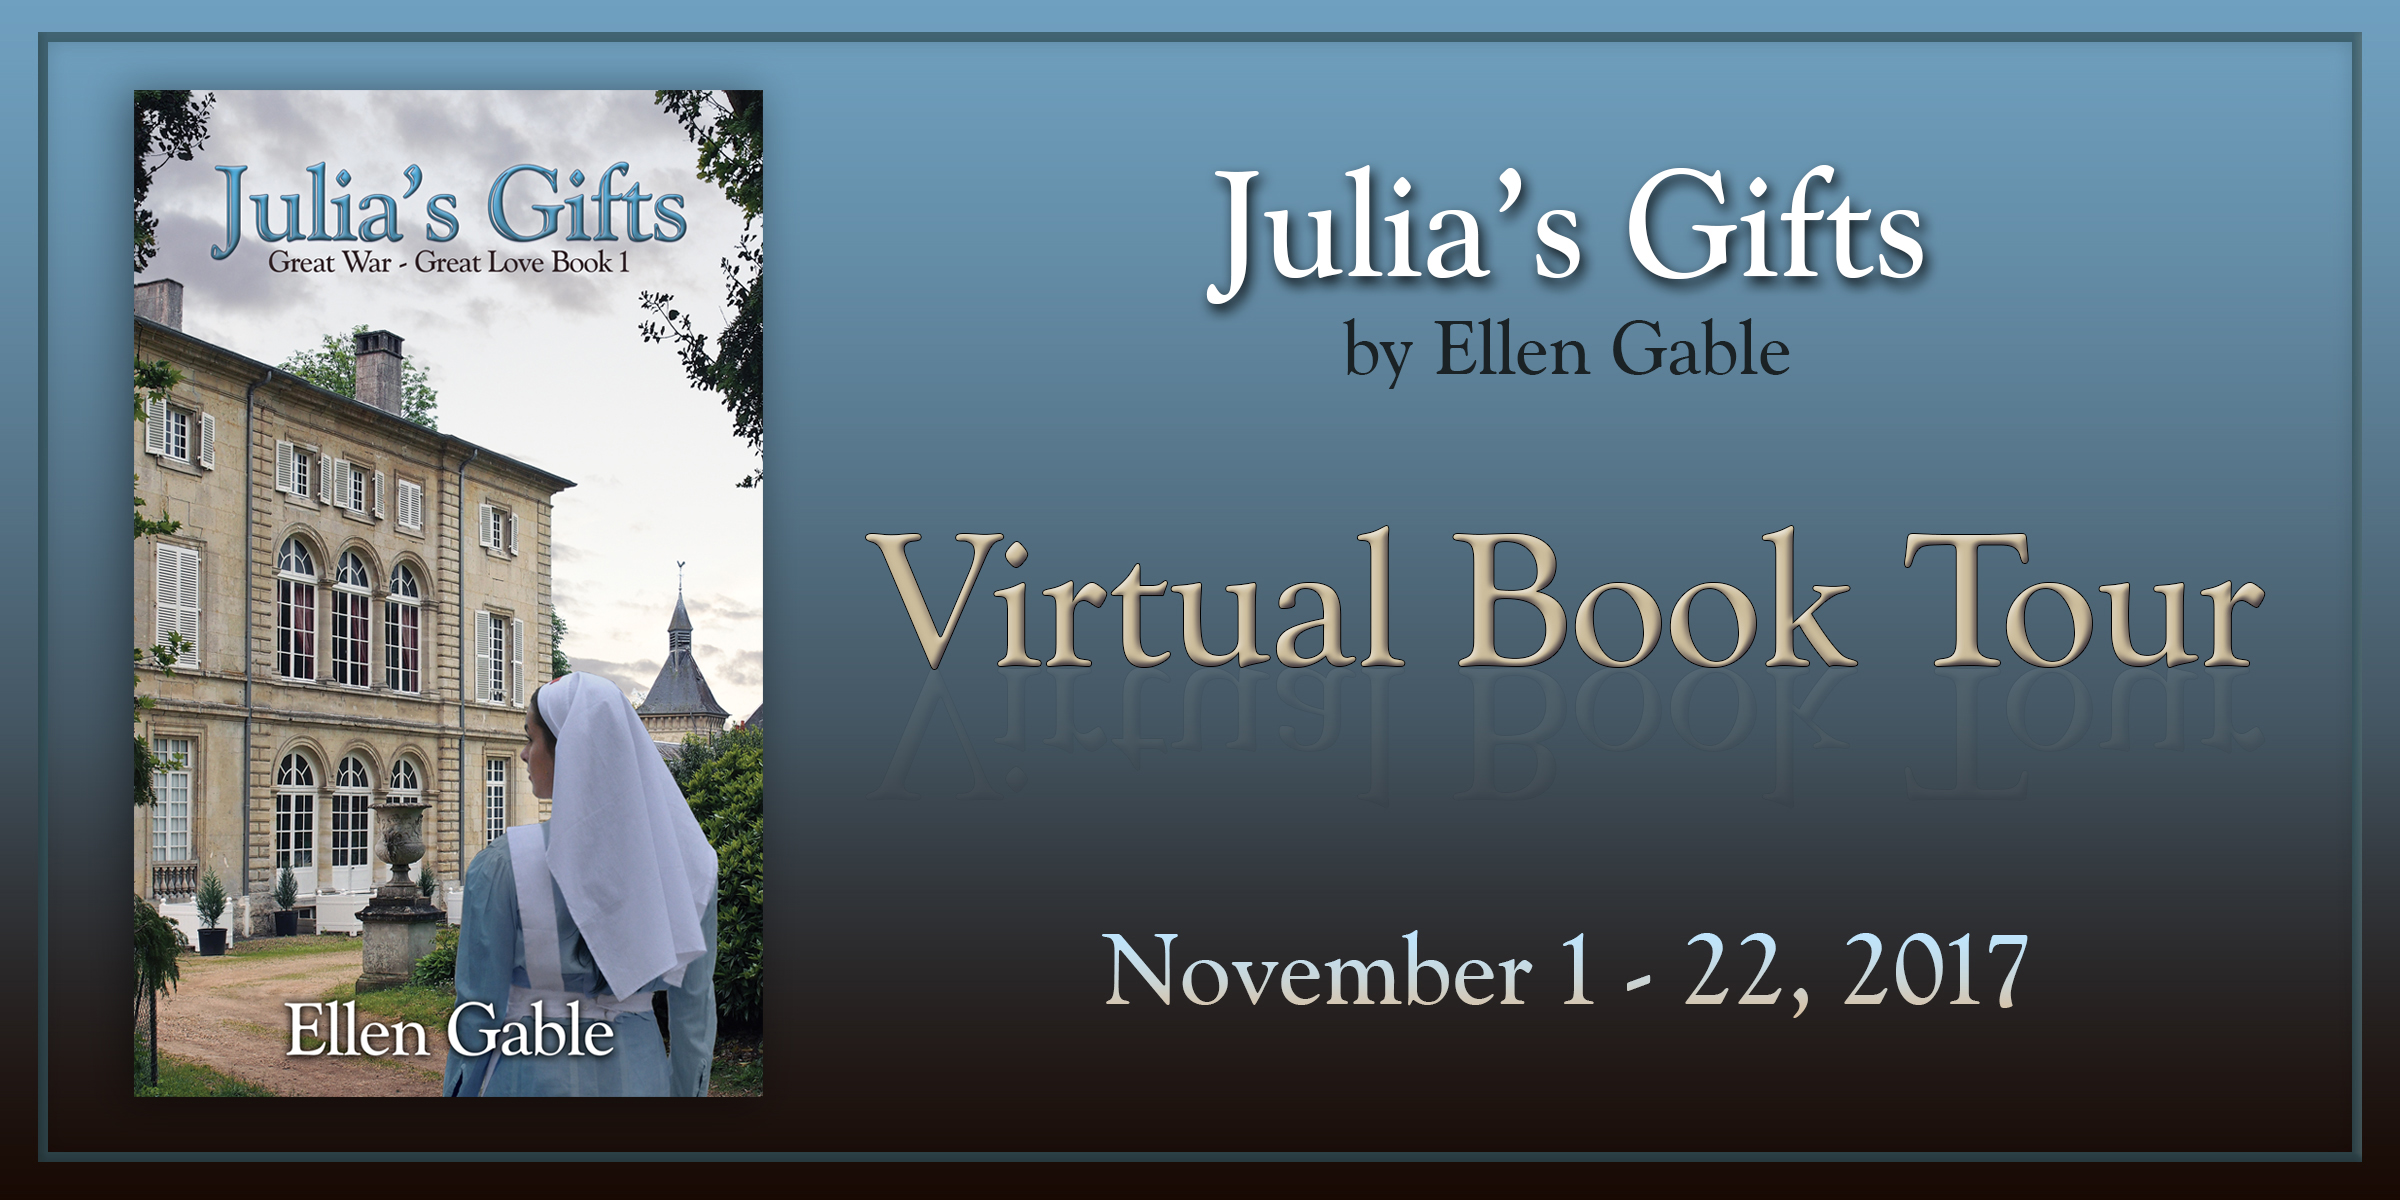 Julia's Gifts, clean romance by Ellen Gable (Great War-Great Love)